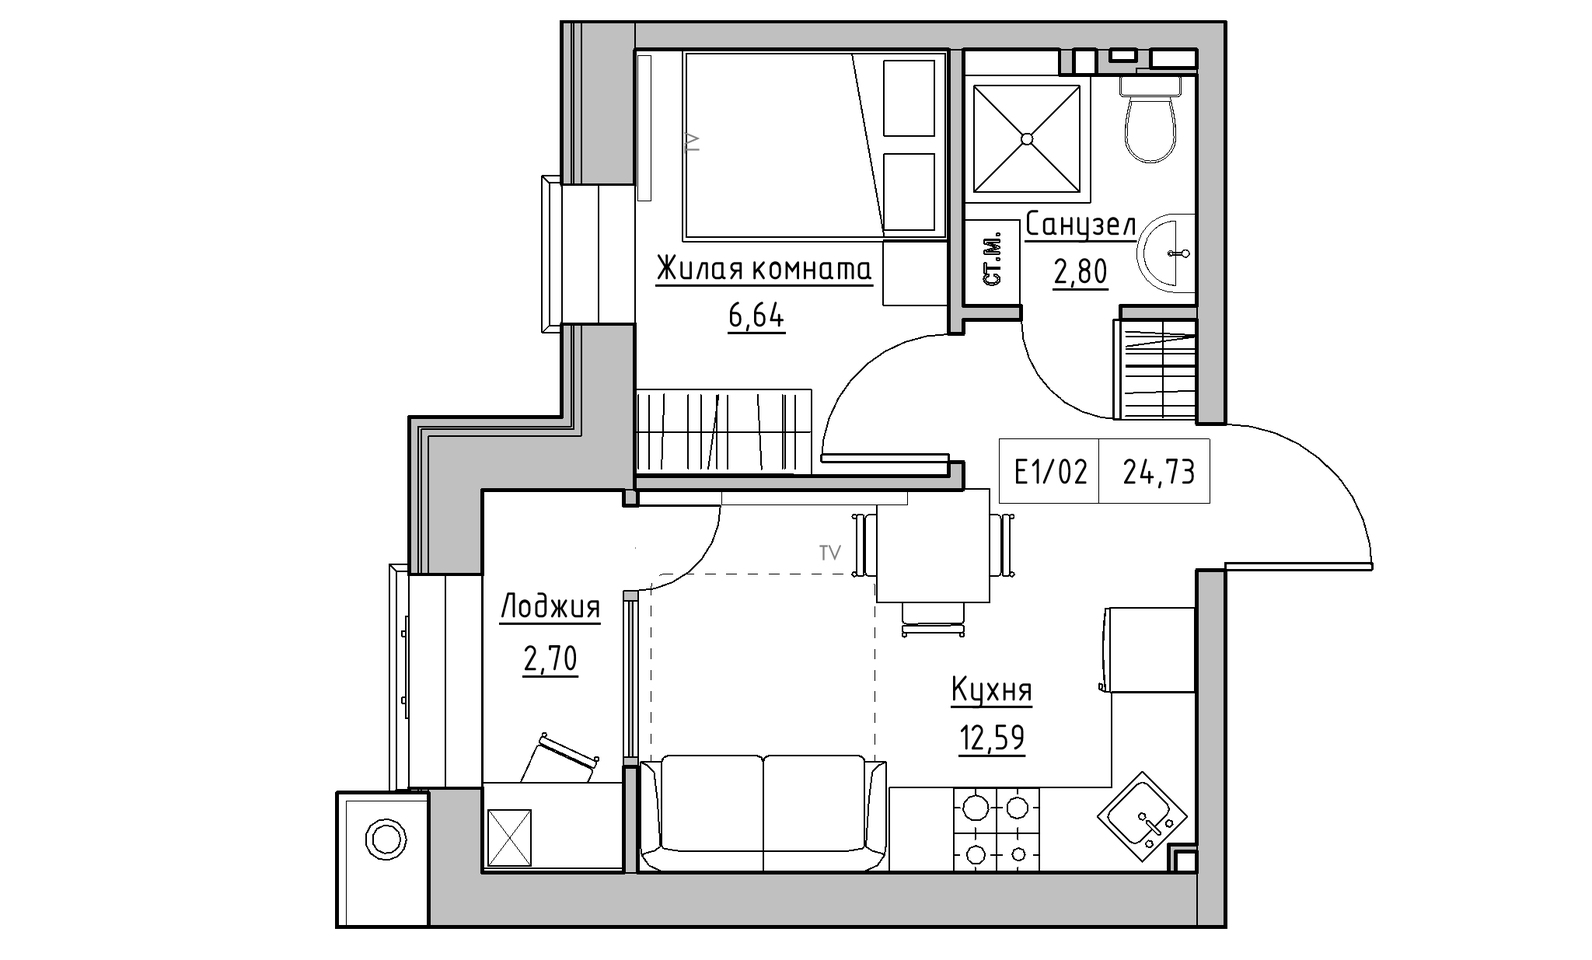 Планування 1-к квартира площею 24.73м2, KS-014-04/0013.